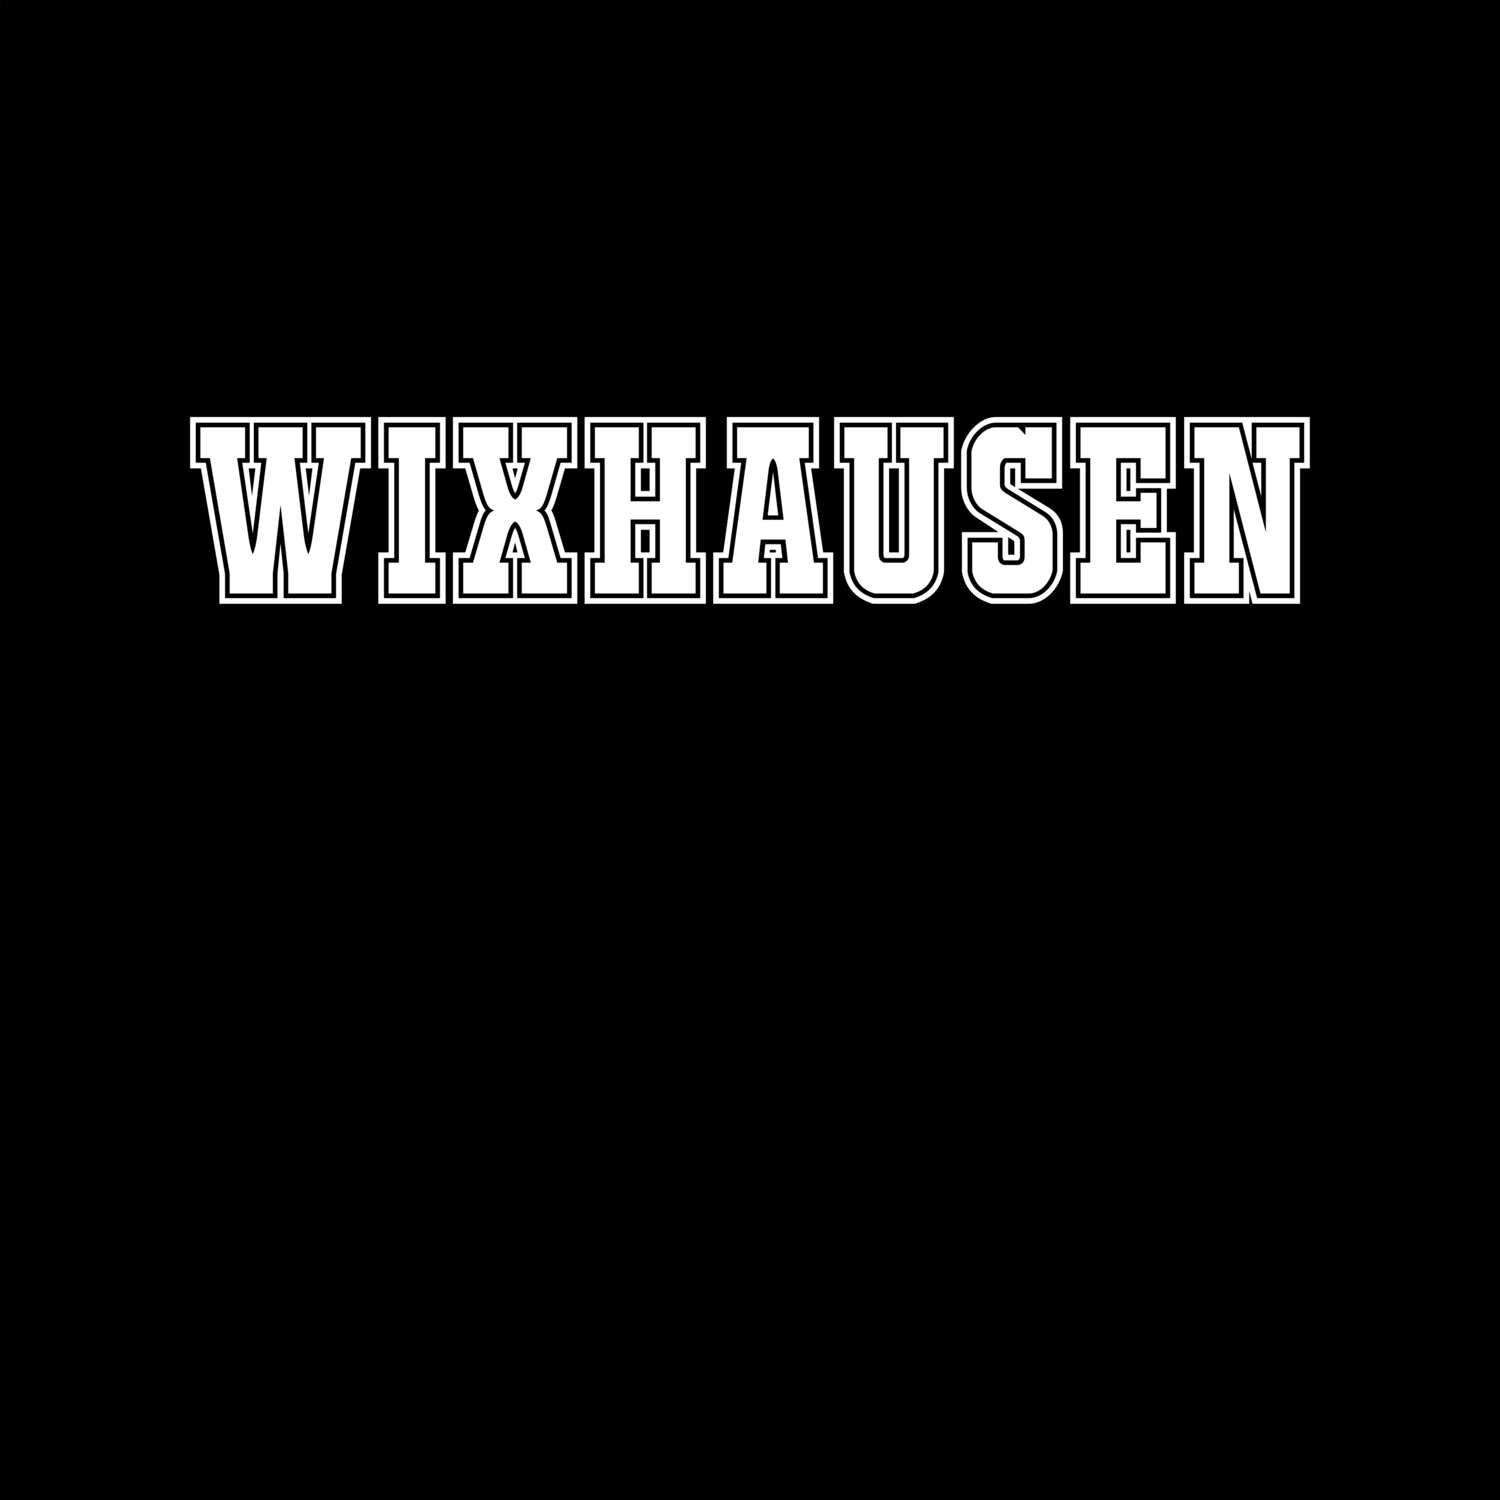 Wixhausen T-Shirt »Classic«